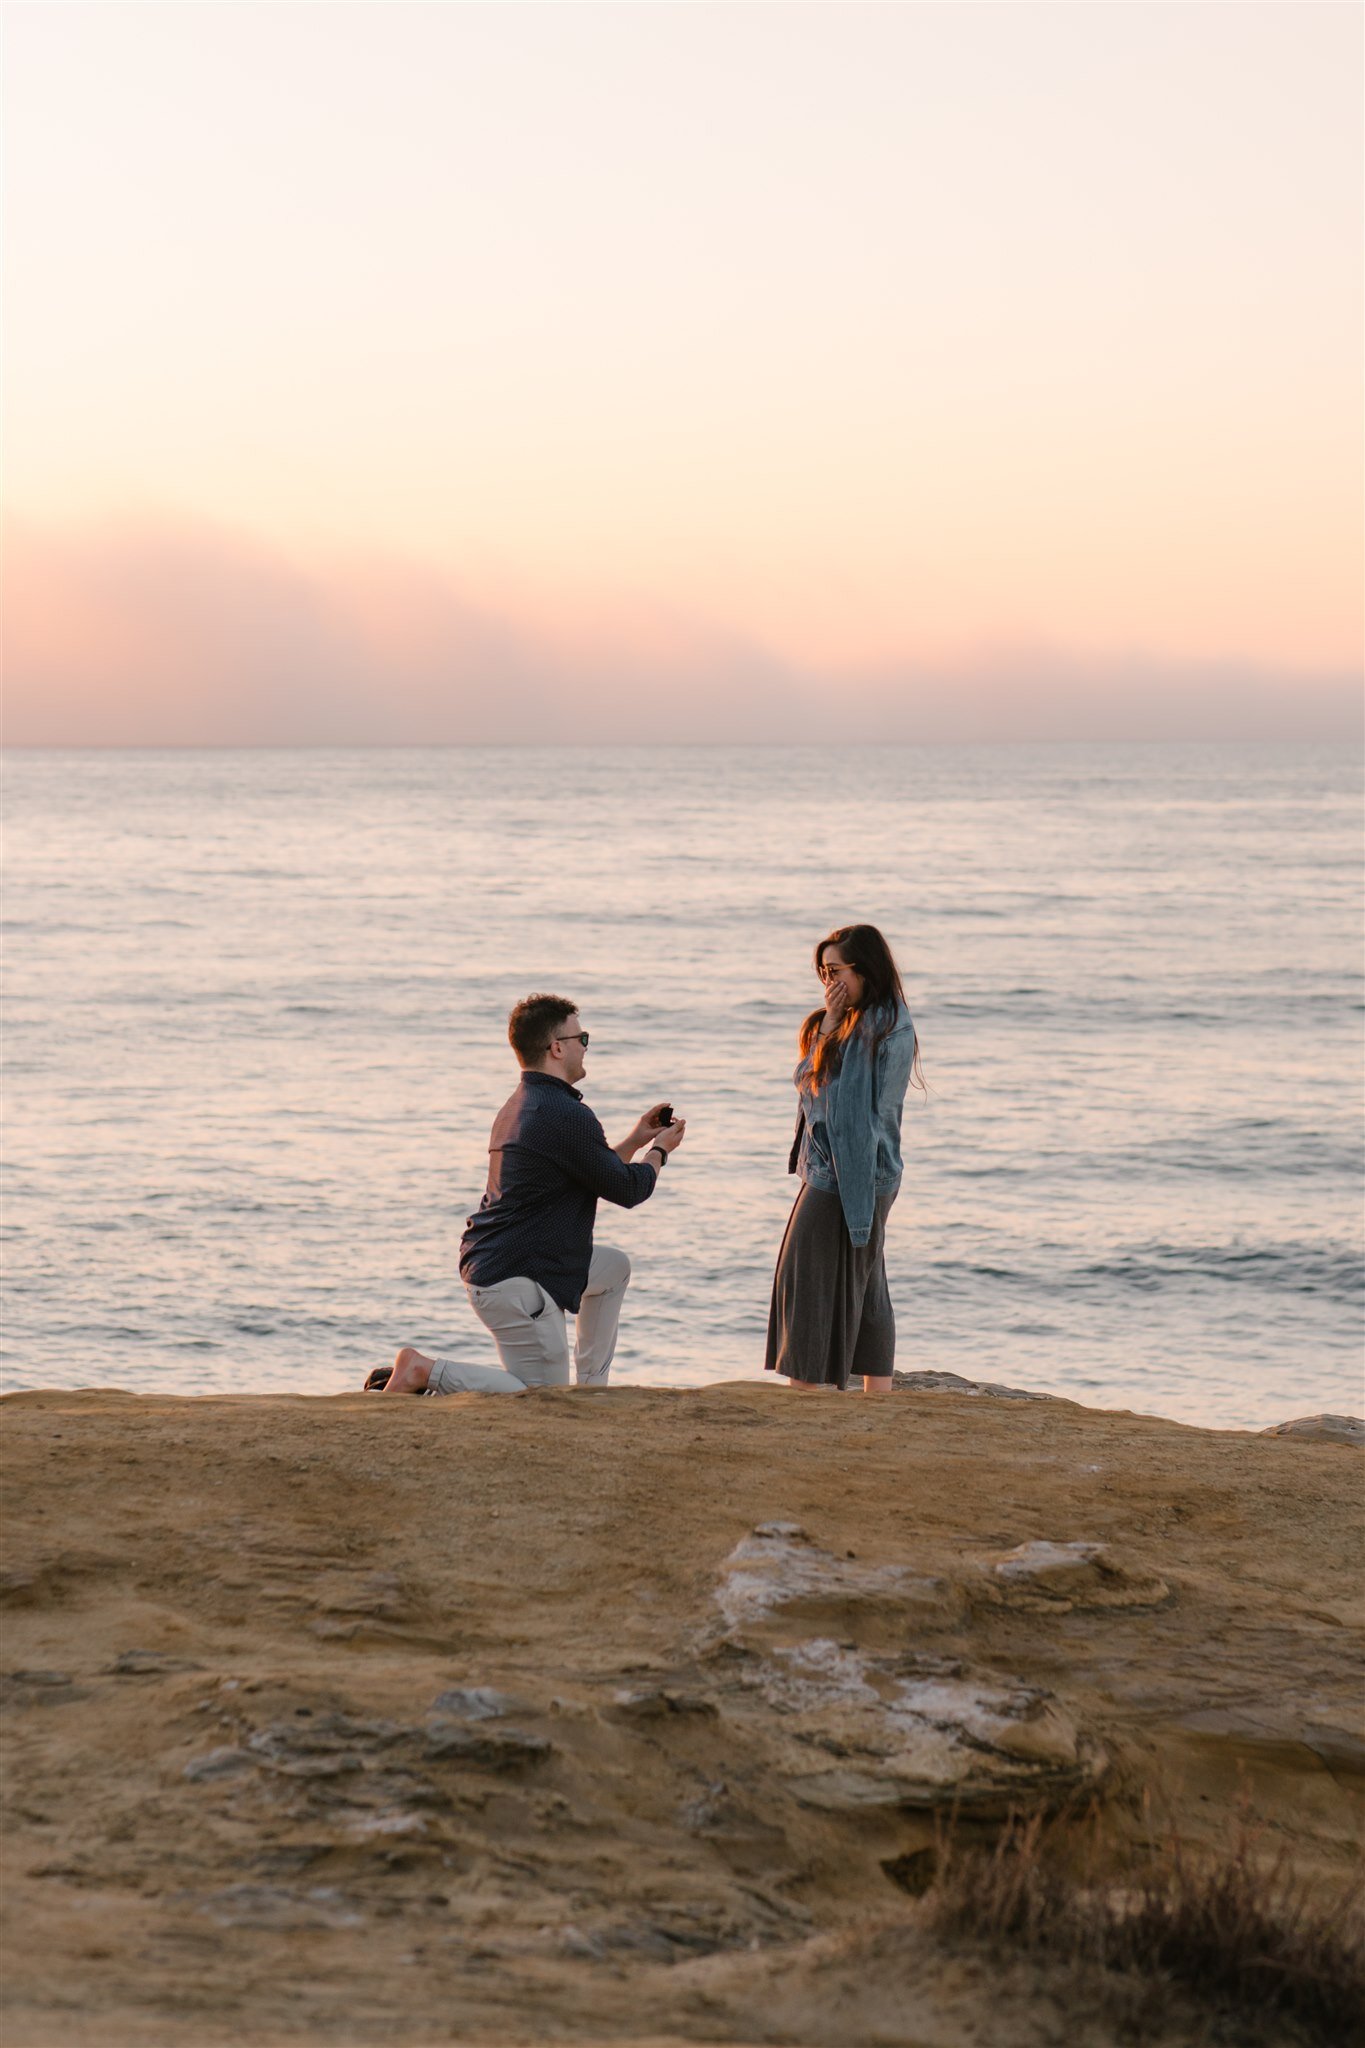 sunset-cliffs-san-diego-surprise-proposal-engagement-socal-southern-california-wedding-elopement-photographer-beach-ocean-3.jpg